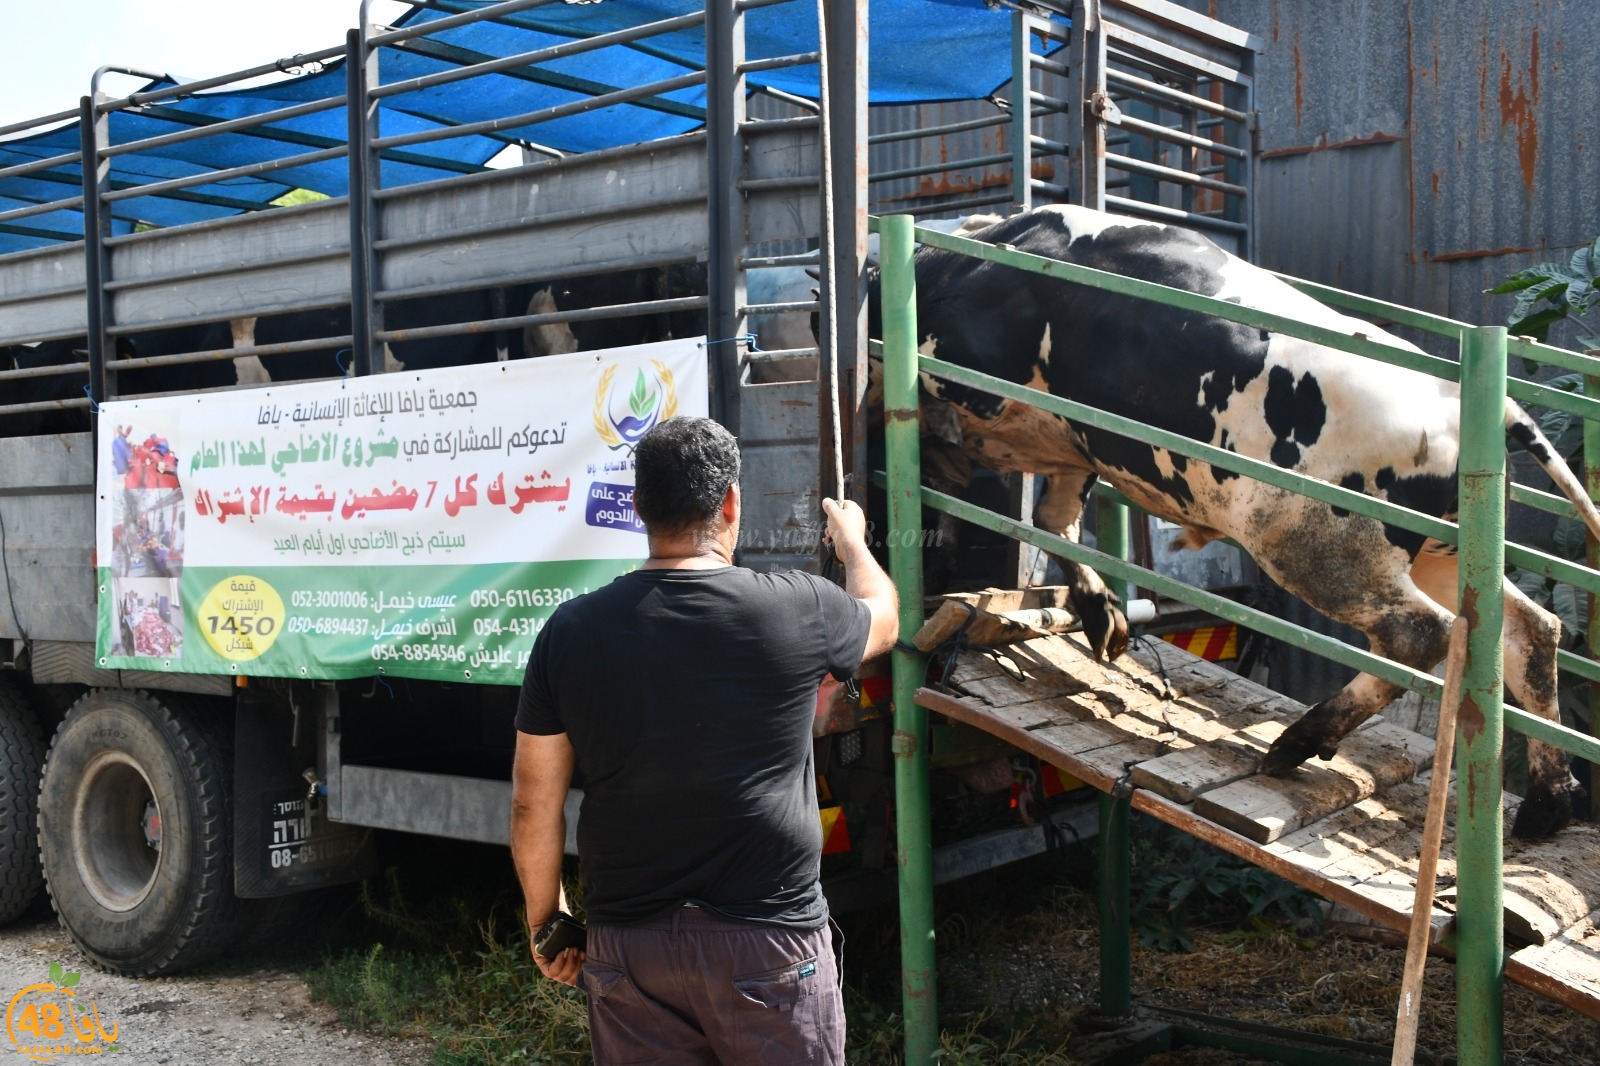  فيديو: 32 عجلاً ستُذبح غداً - جمعية يافا تُعلن عن برنامج توزيع اللحوم والدعوة عامة 